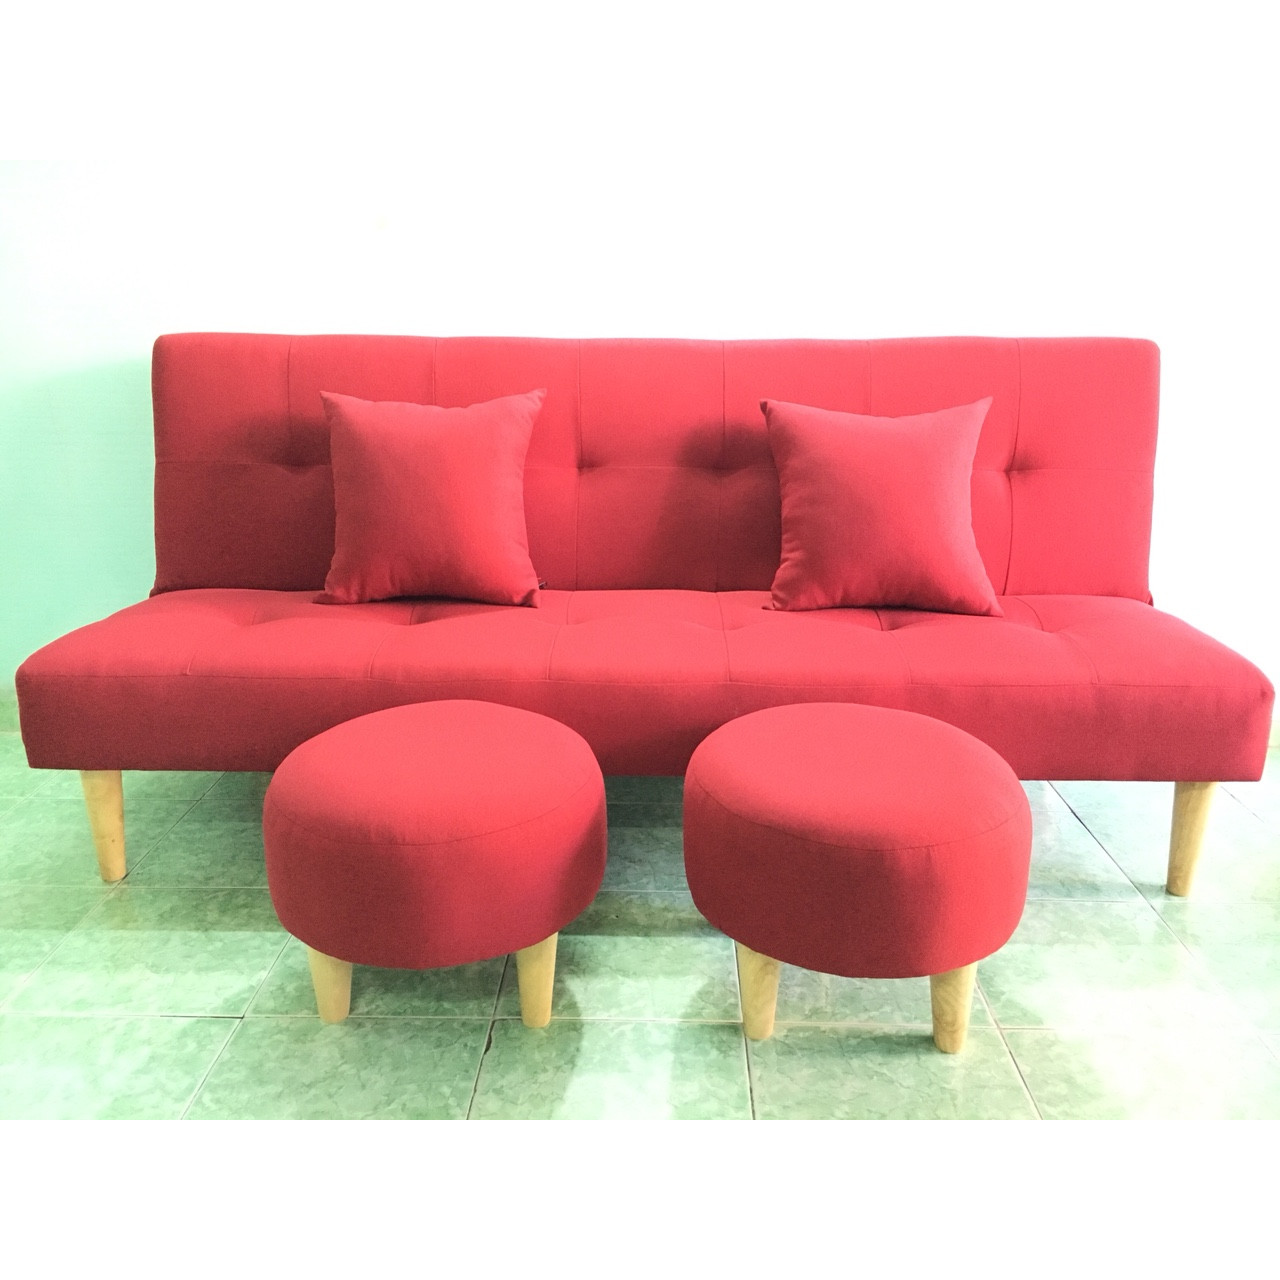 Hình ảnh Ghế sofa giường bed đỏ bộ salon phòng khách SB1-ghedaivs2don